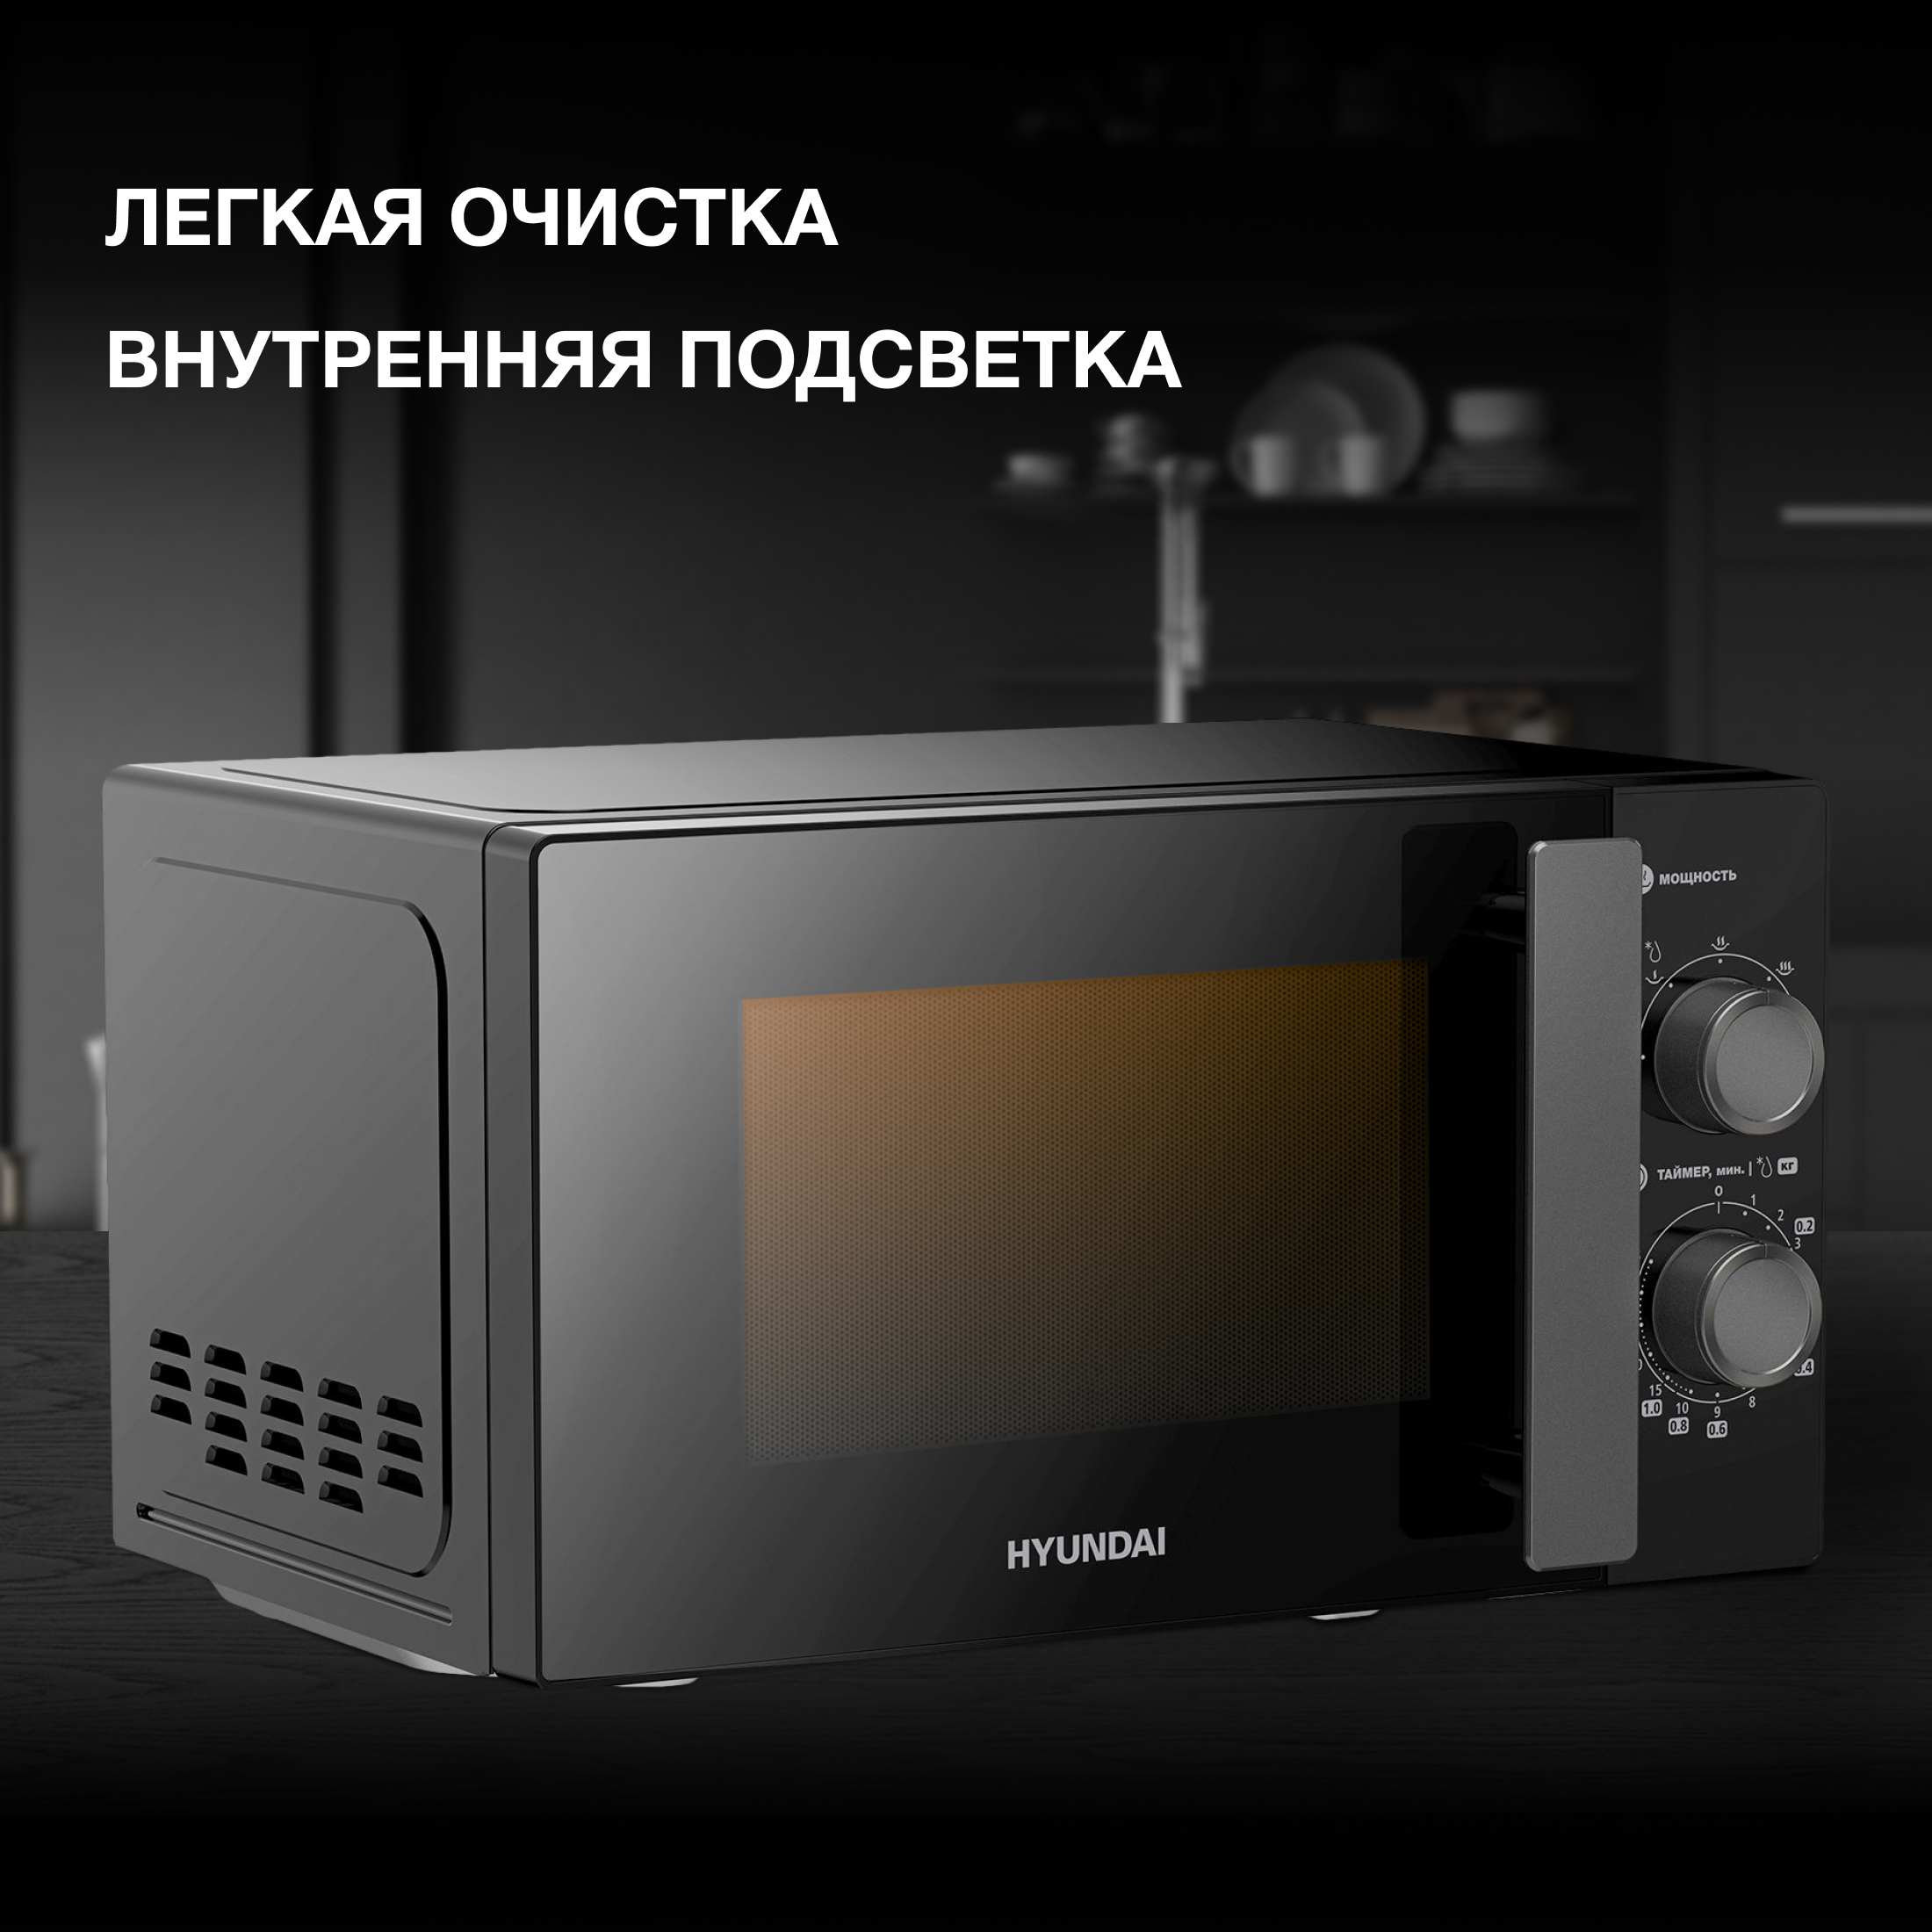 Микроволновая печь соло HYUNDAI HYM-M2091 черный микроволновая печь соло hyundai hym m2050 черная